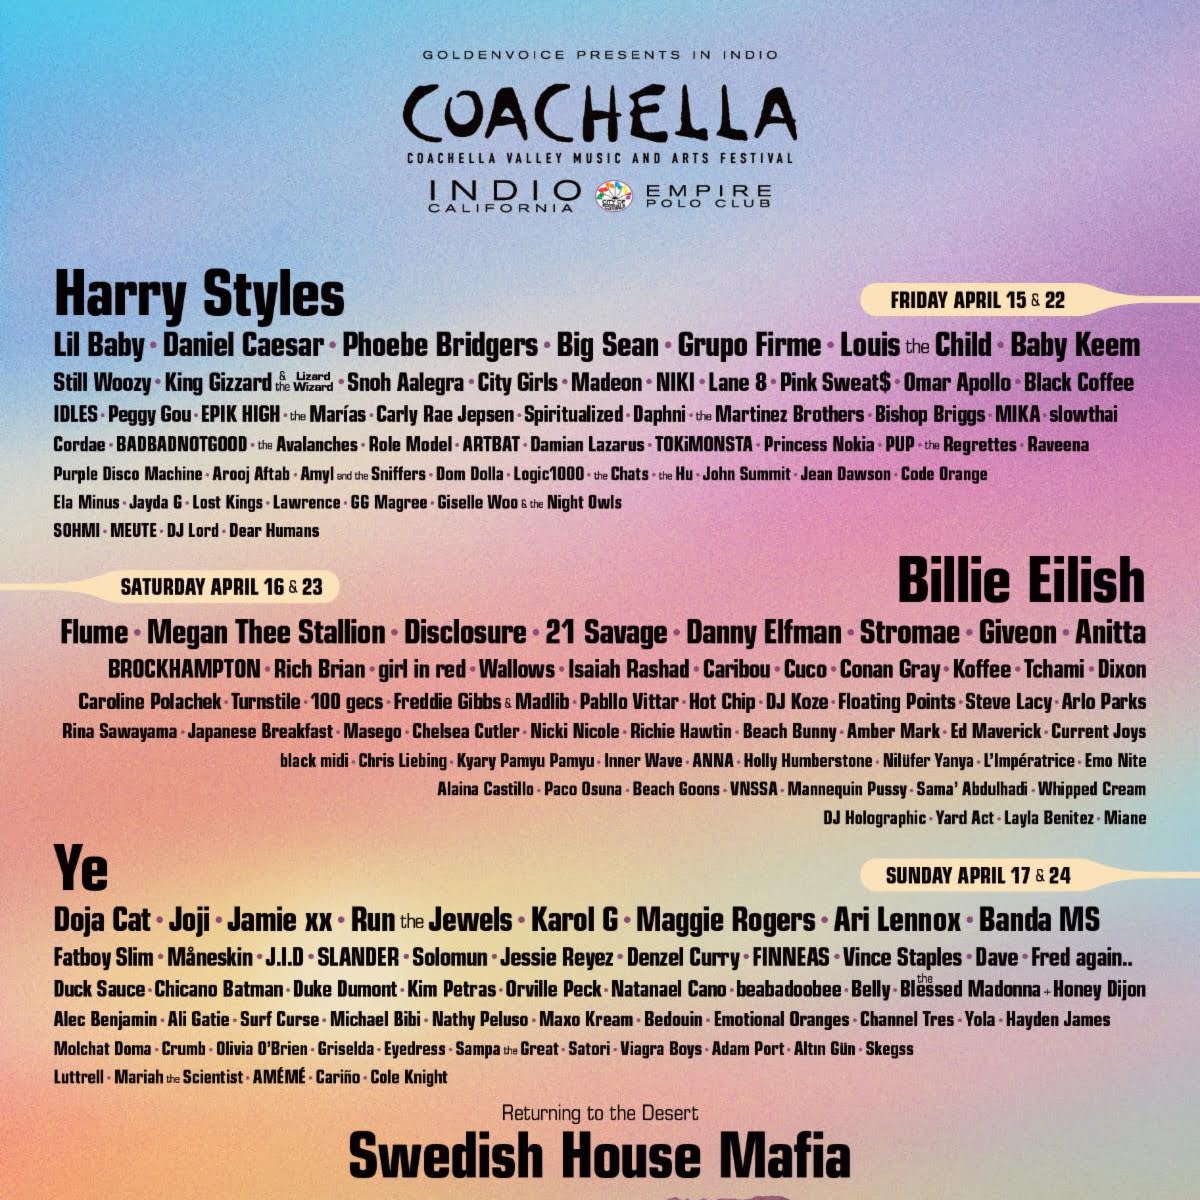 Coachella 2022 Poster via Coachella for use by 360 Magazine